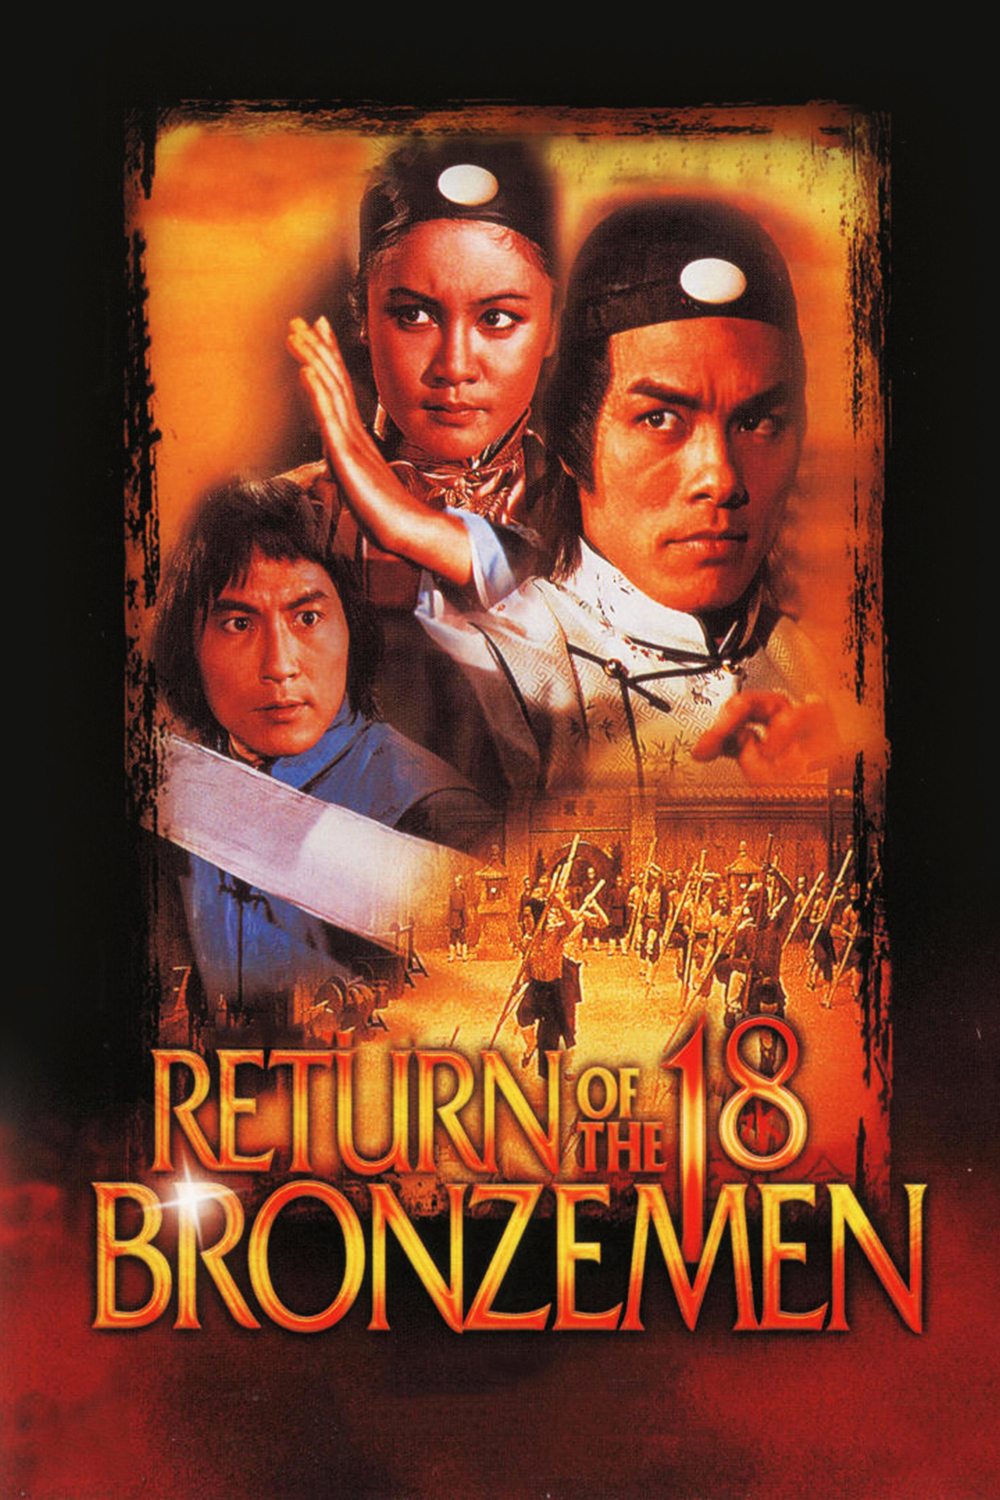 少林寺十八铜人+雍正大破十八铜人 [国语 DIY简繁字幕].The.18.Bronzemen.1976.Return.of.the.18.Bronzemen.1976.GBR.Blu-ray.1080p.AVC.LPCM.1.0-DIY@Hero [45.35GB]